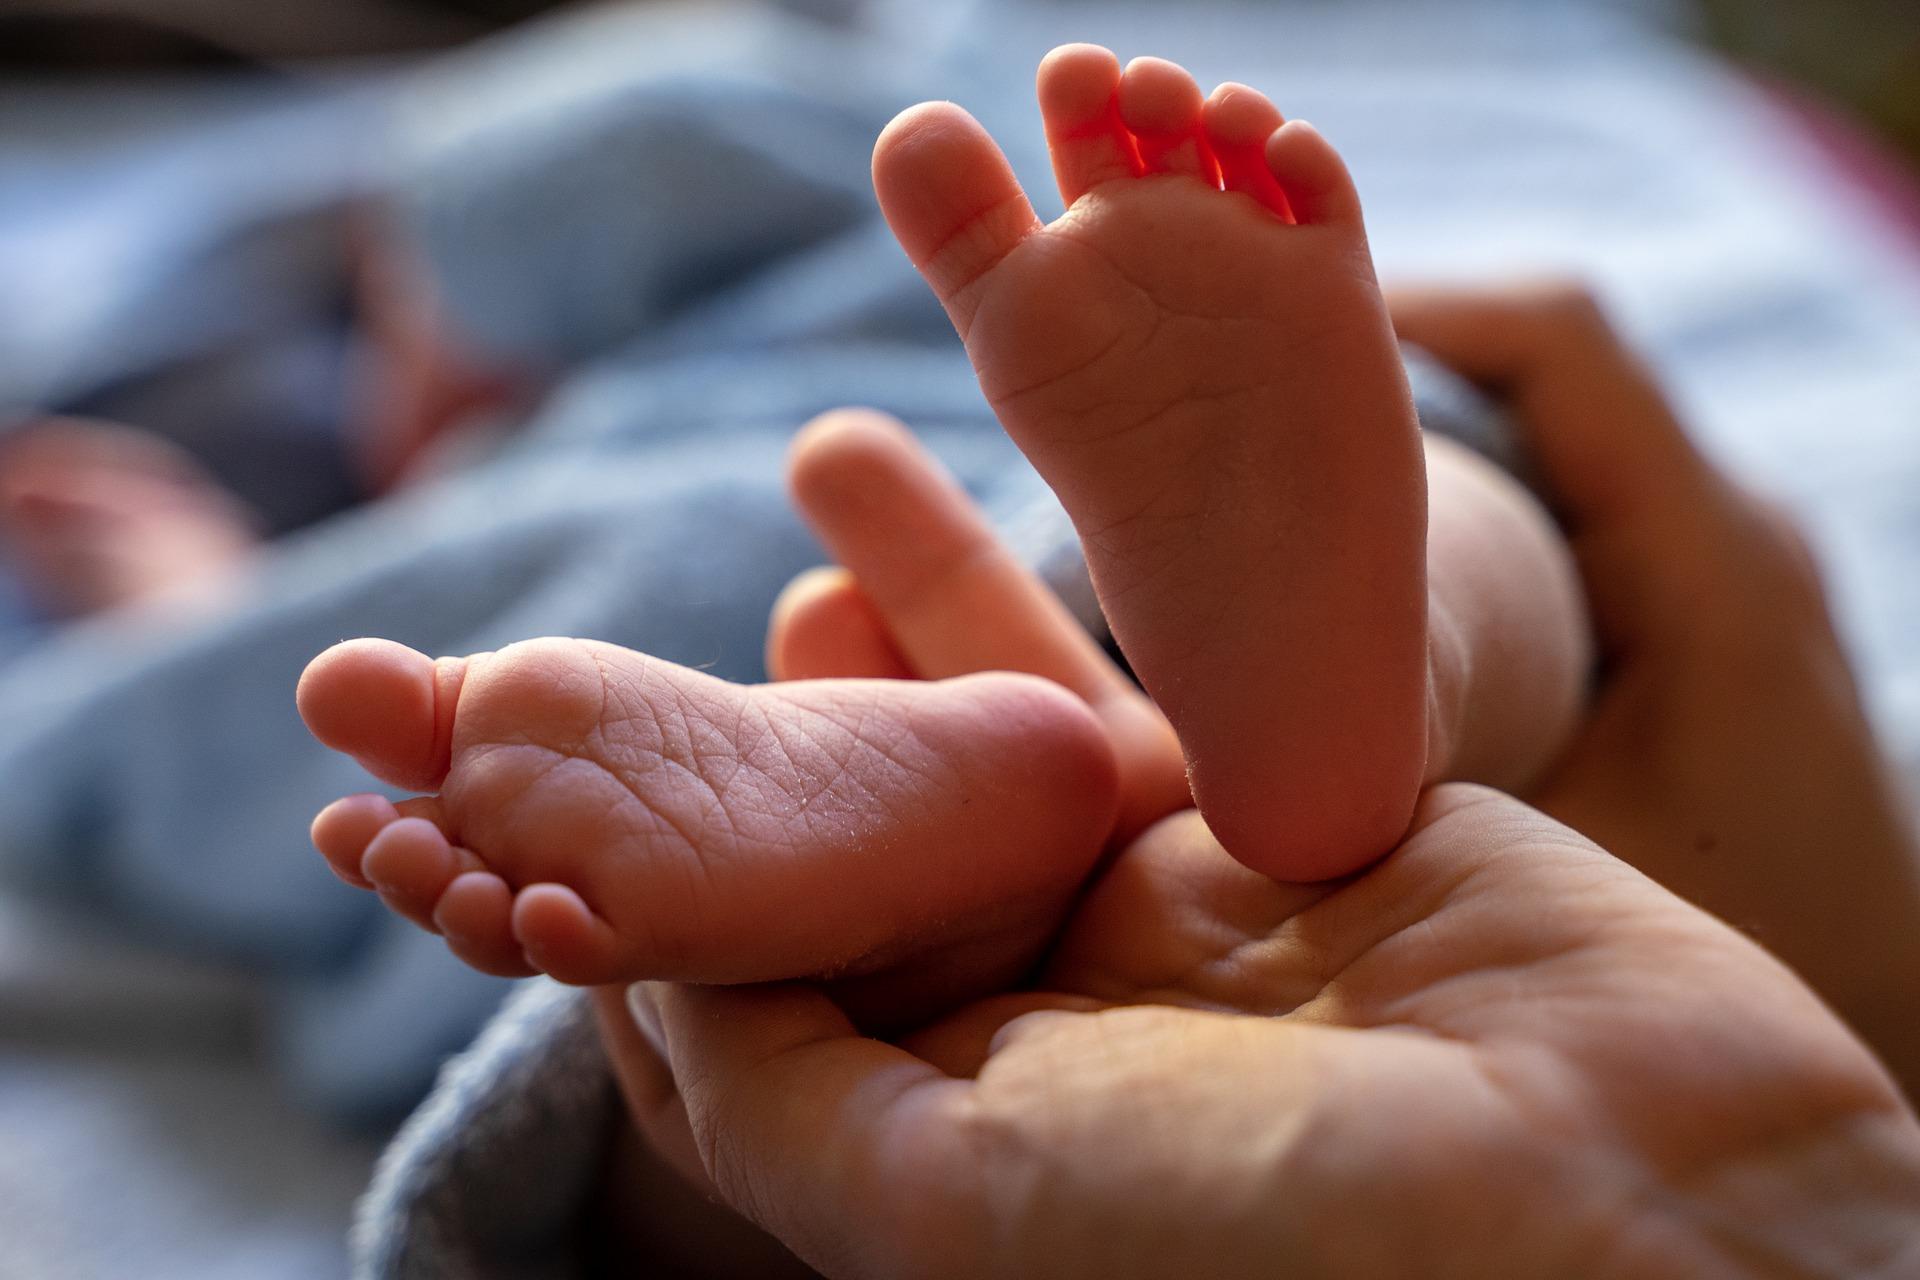 В Ингушетии врачи спасли жизнь недоношенного ребёнка, чья мать умерла от коронавируса